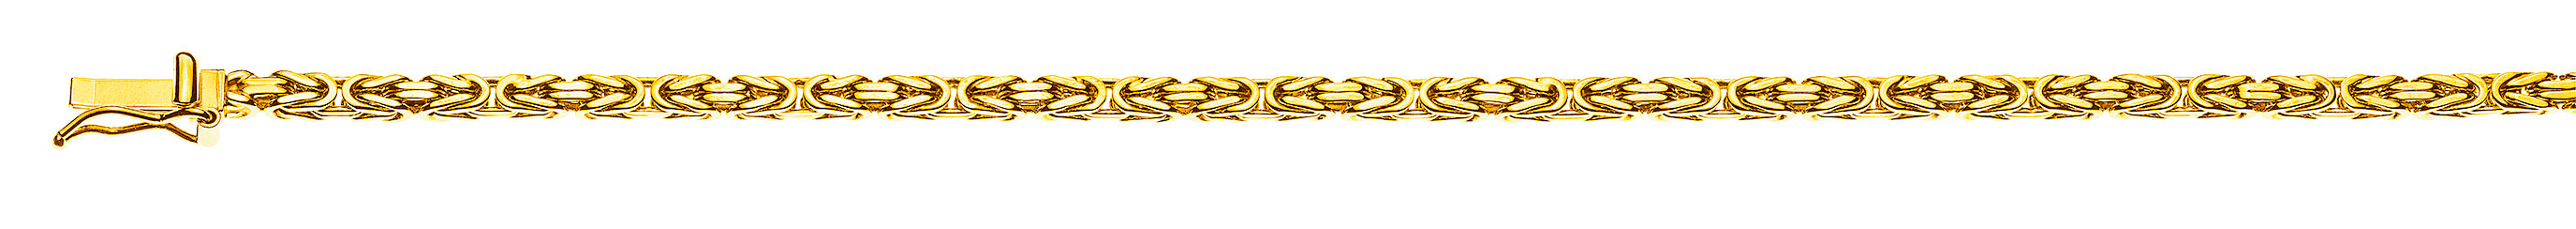 AURONOS Prestige Halskette Gelbgold 18K Königskette 55cm 2.5mm